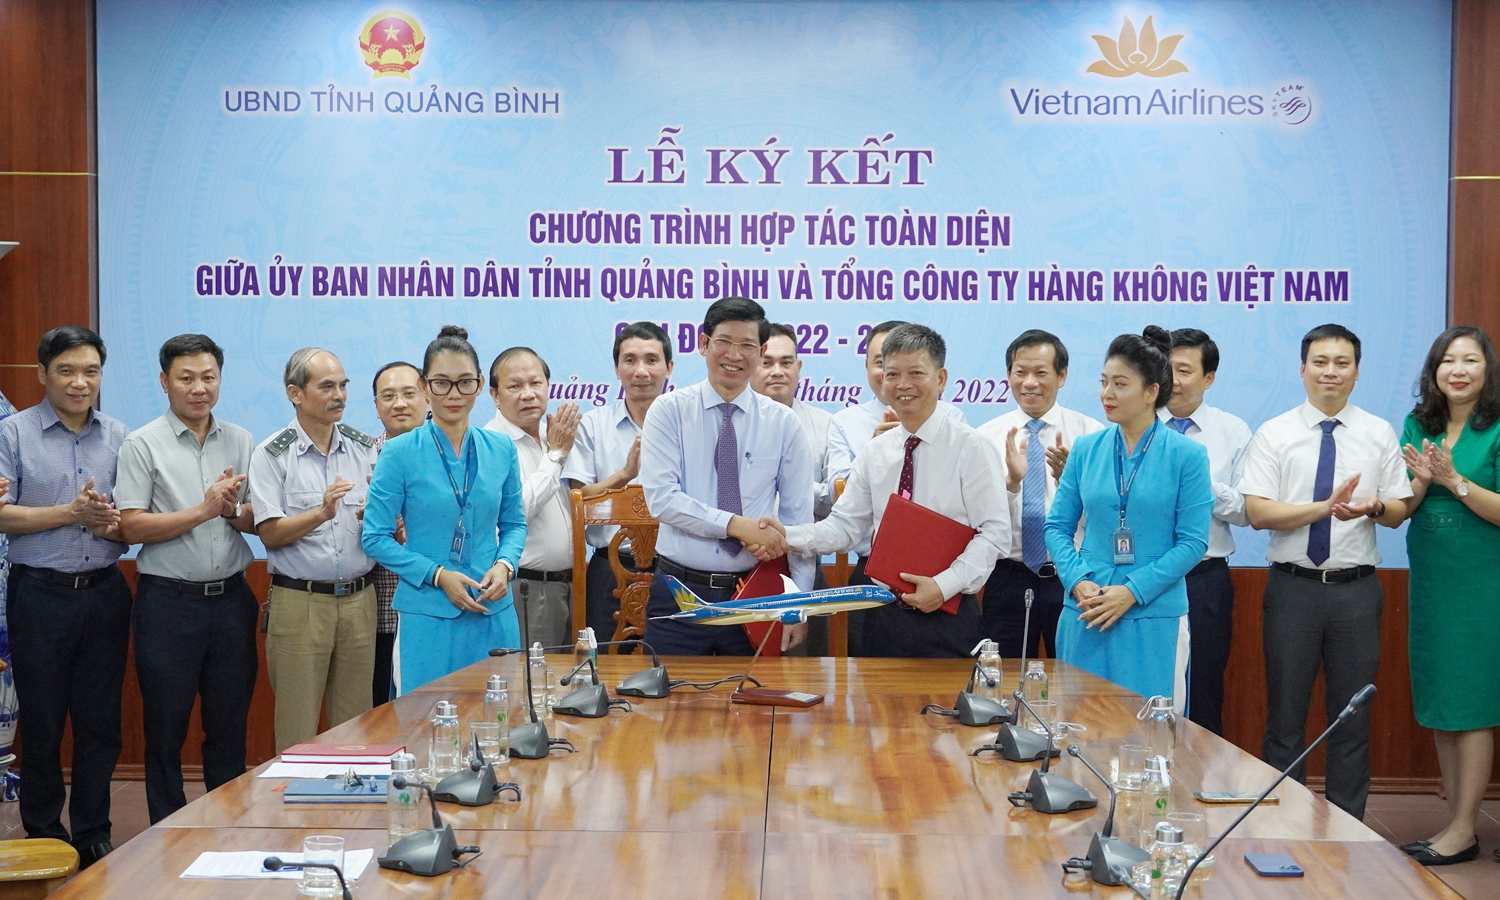 Ký kết hợp tác toàn diện giữa UBND tỉnh Quảng Bình và Vietnam Airlines